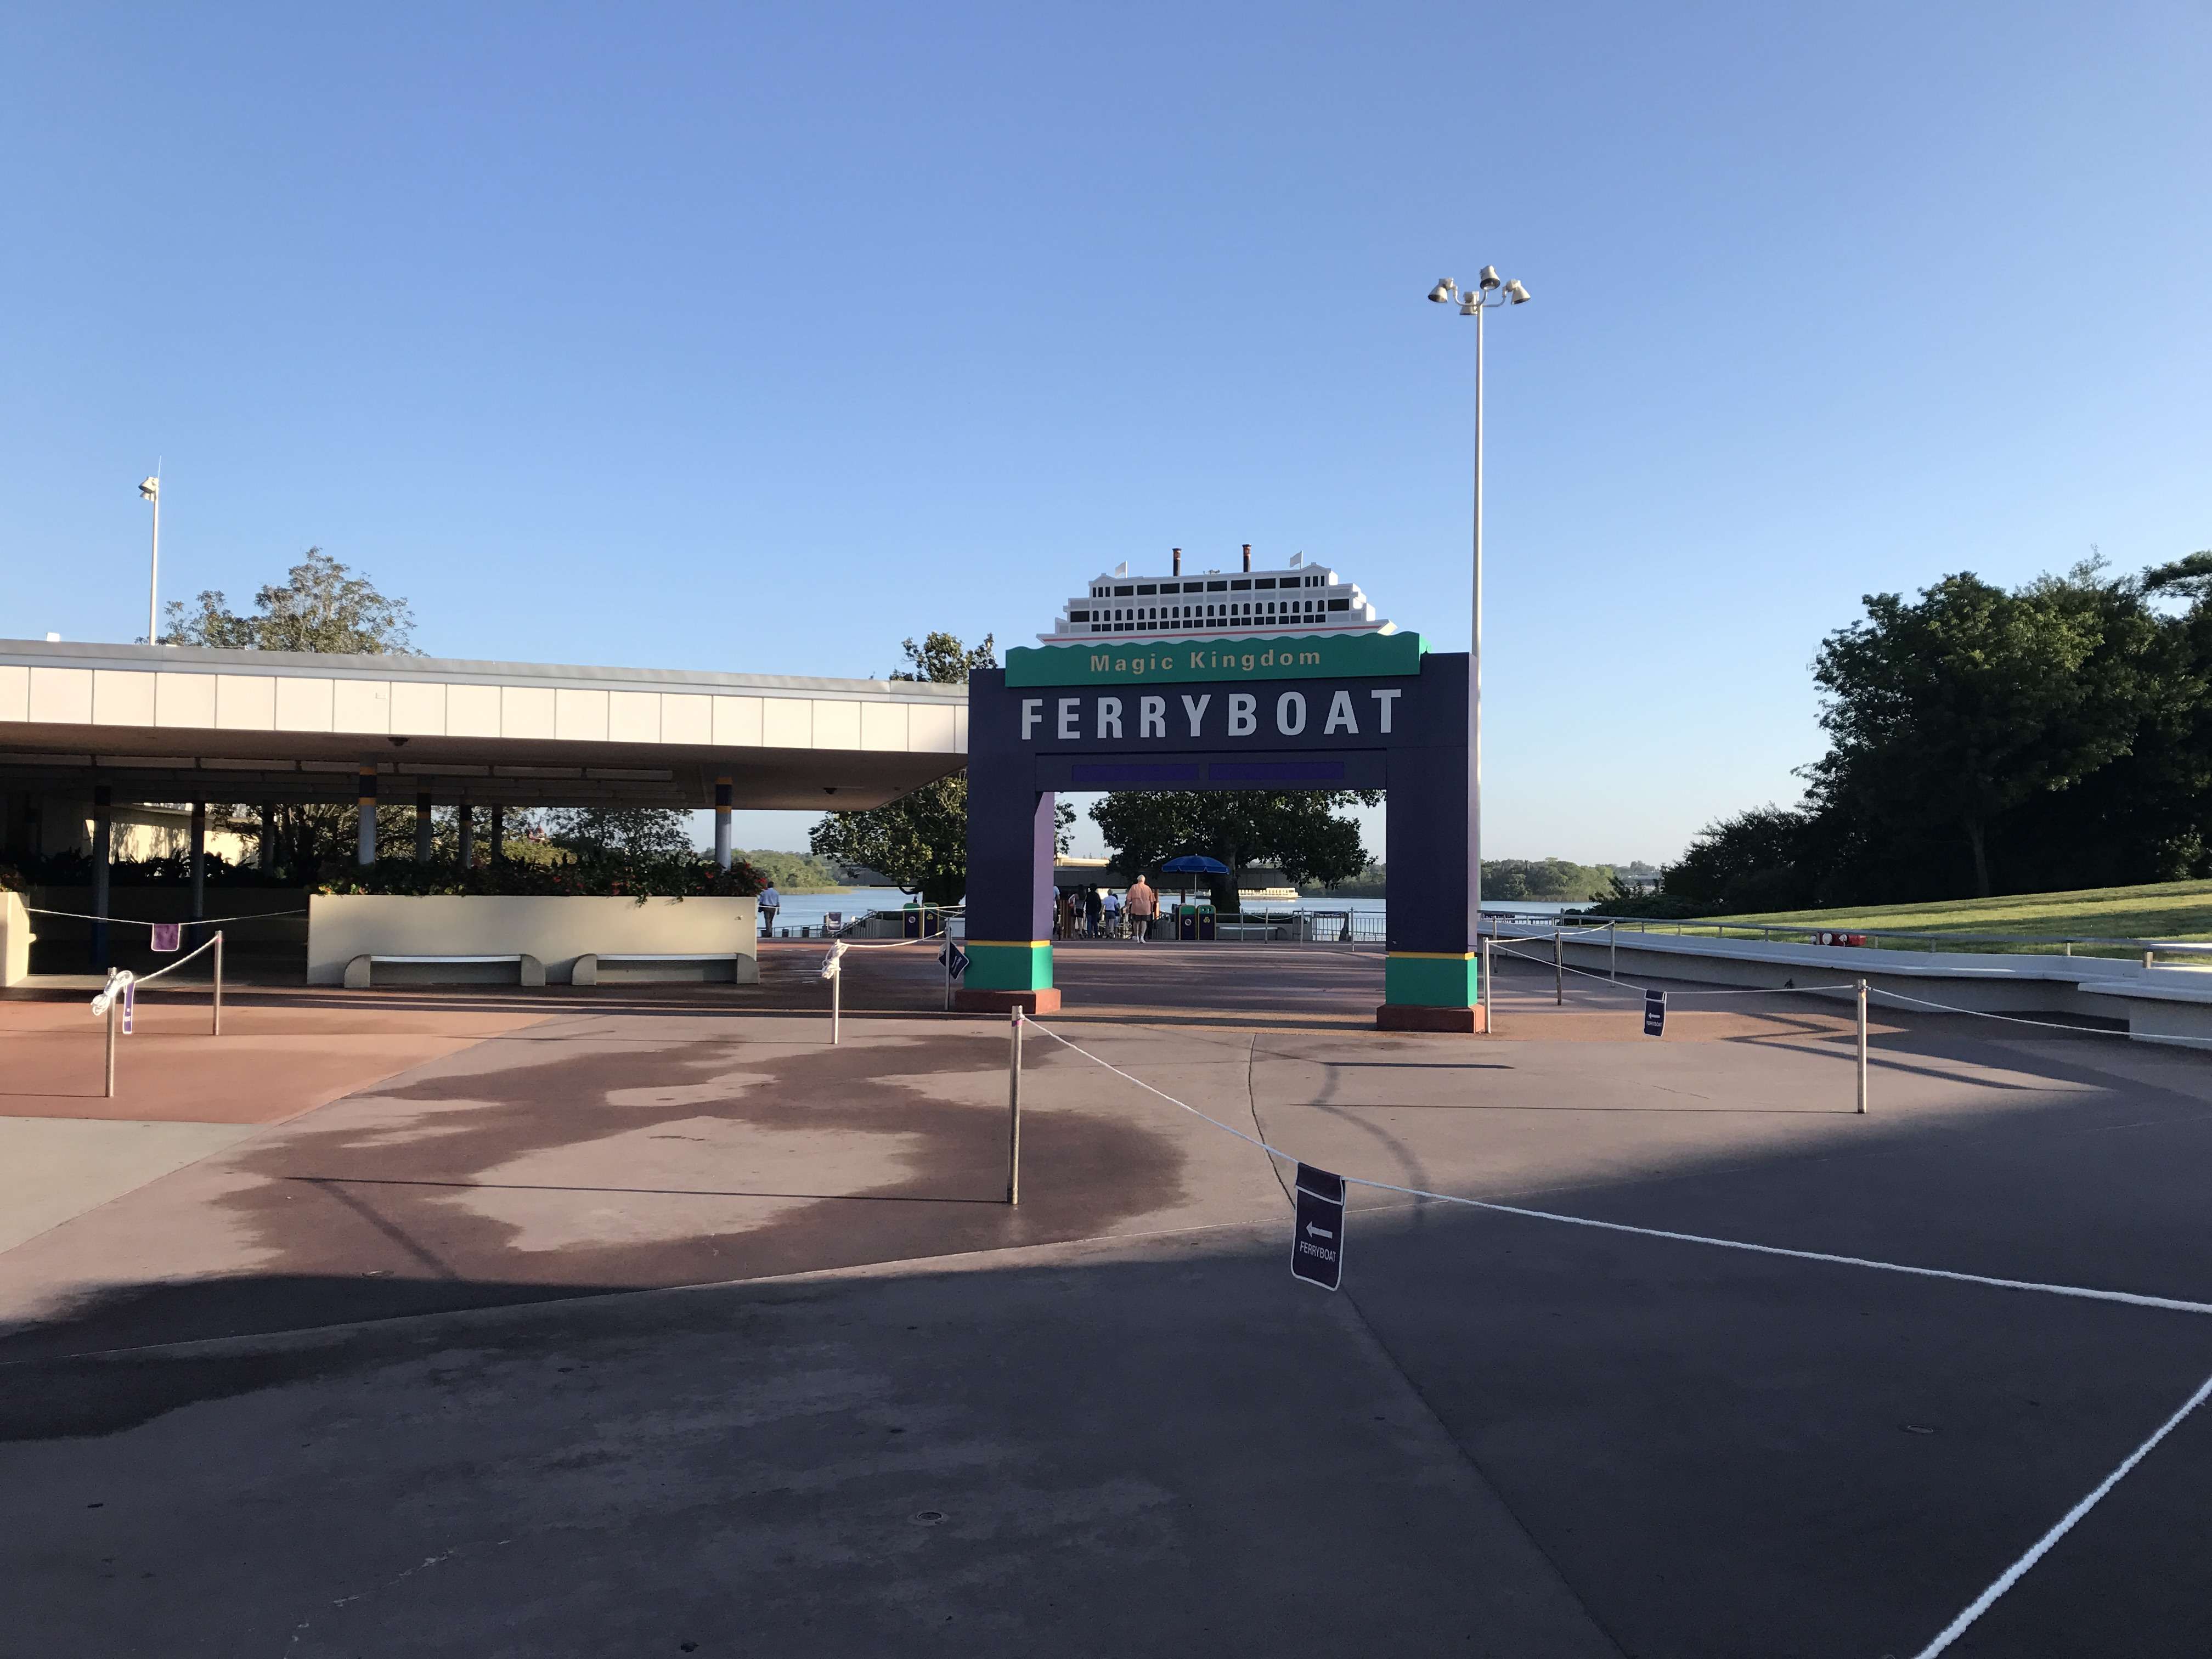 Día 11: martes 16 de mayo: Magic Kingdom y Epcot - Dos semanas en Orlando: Walt Disney World (en construcción) (2)